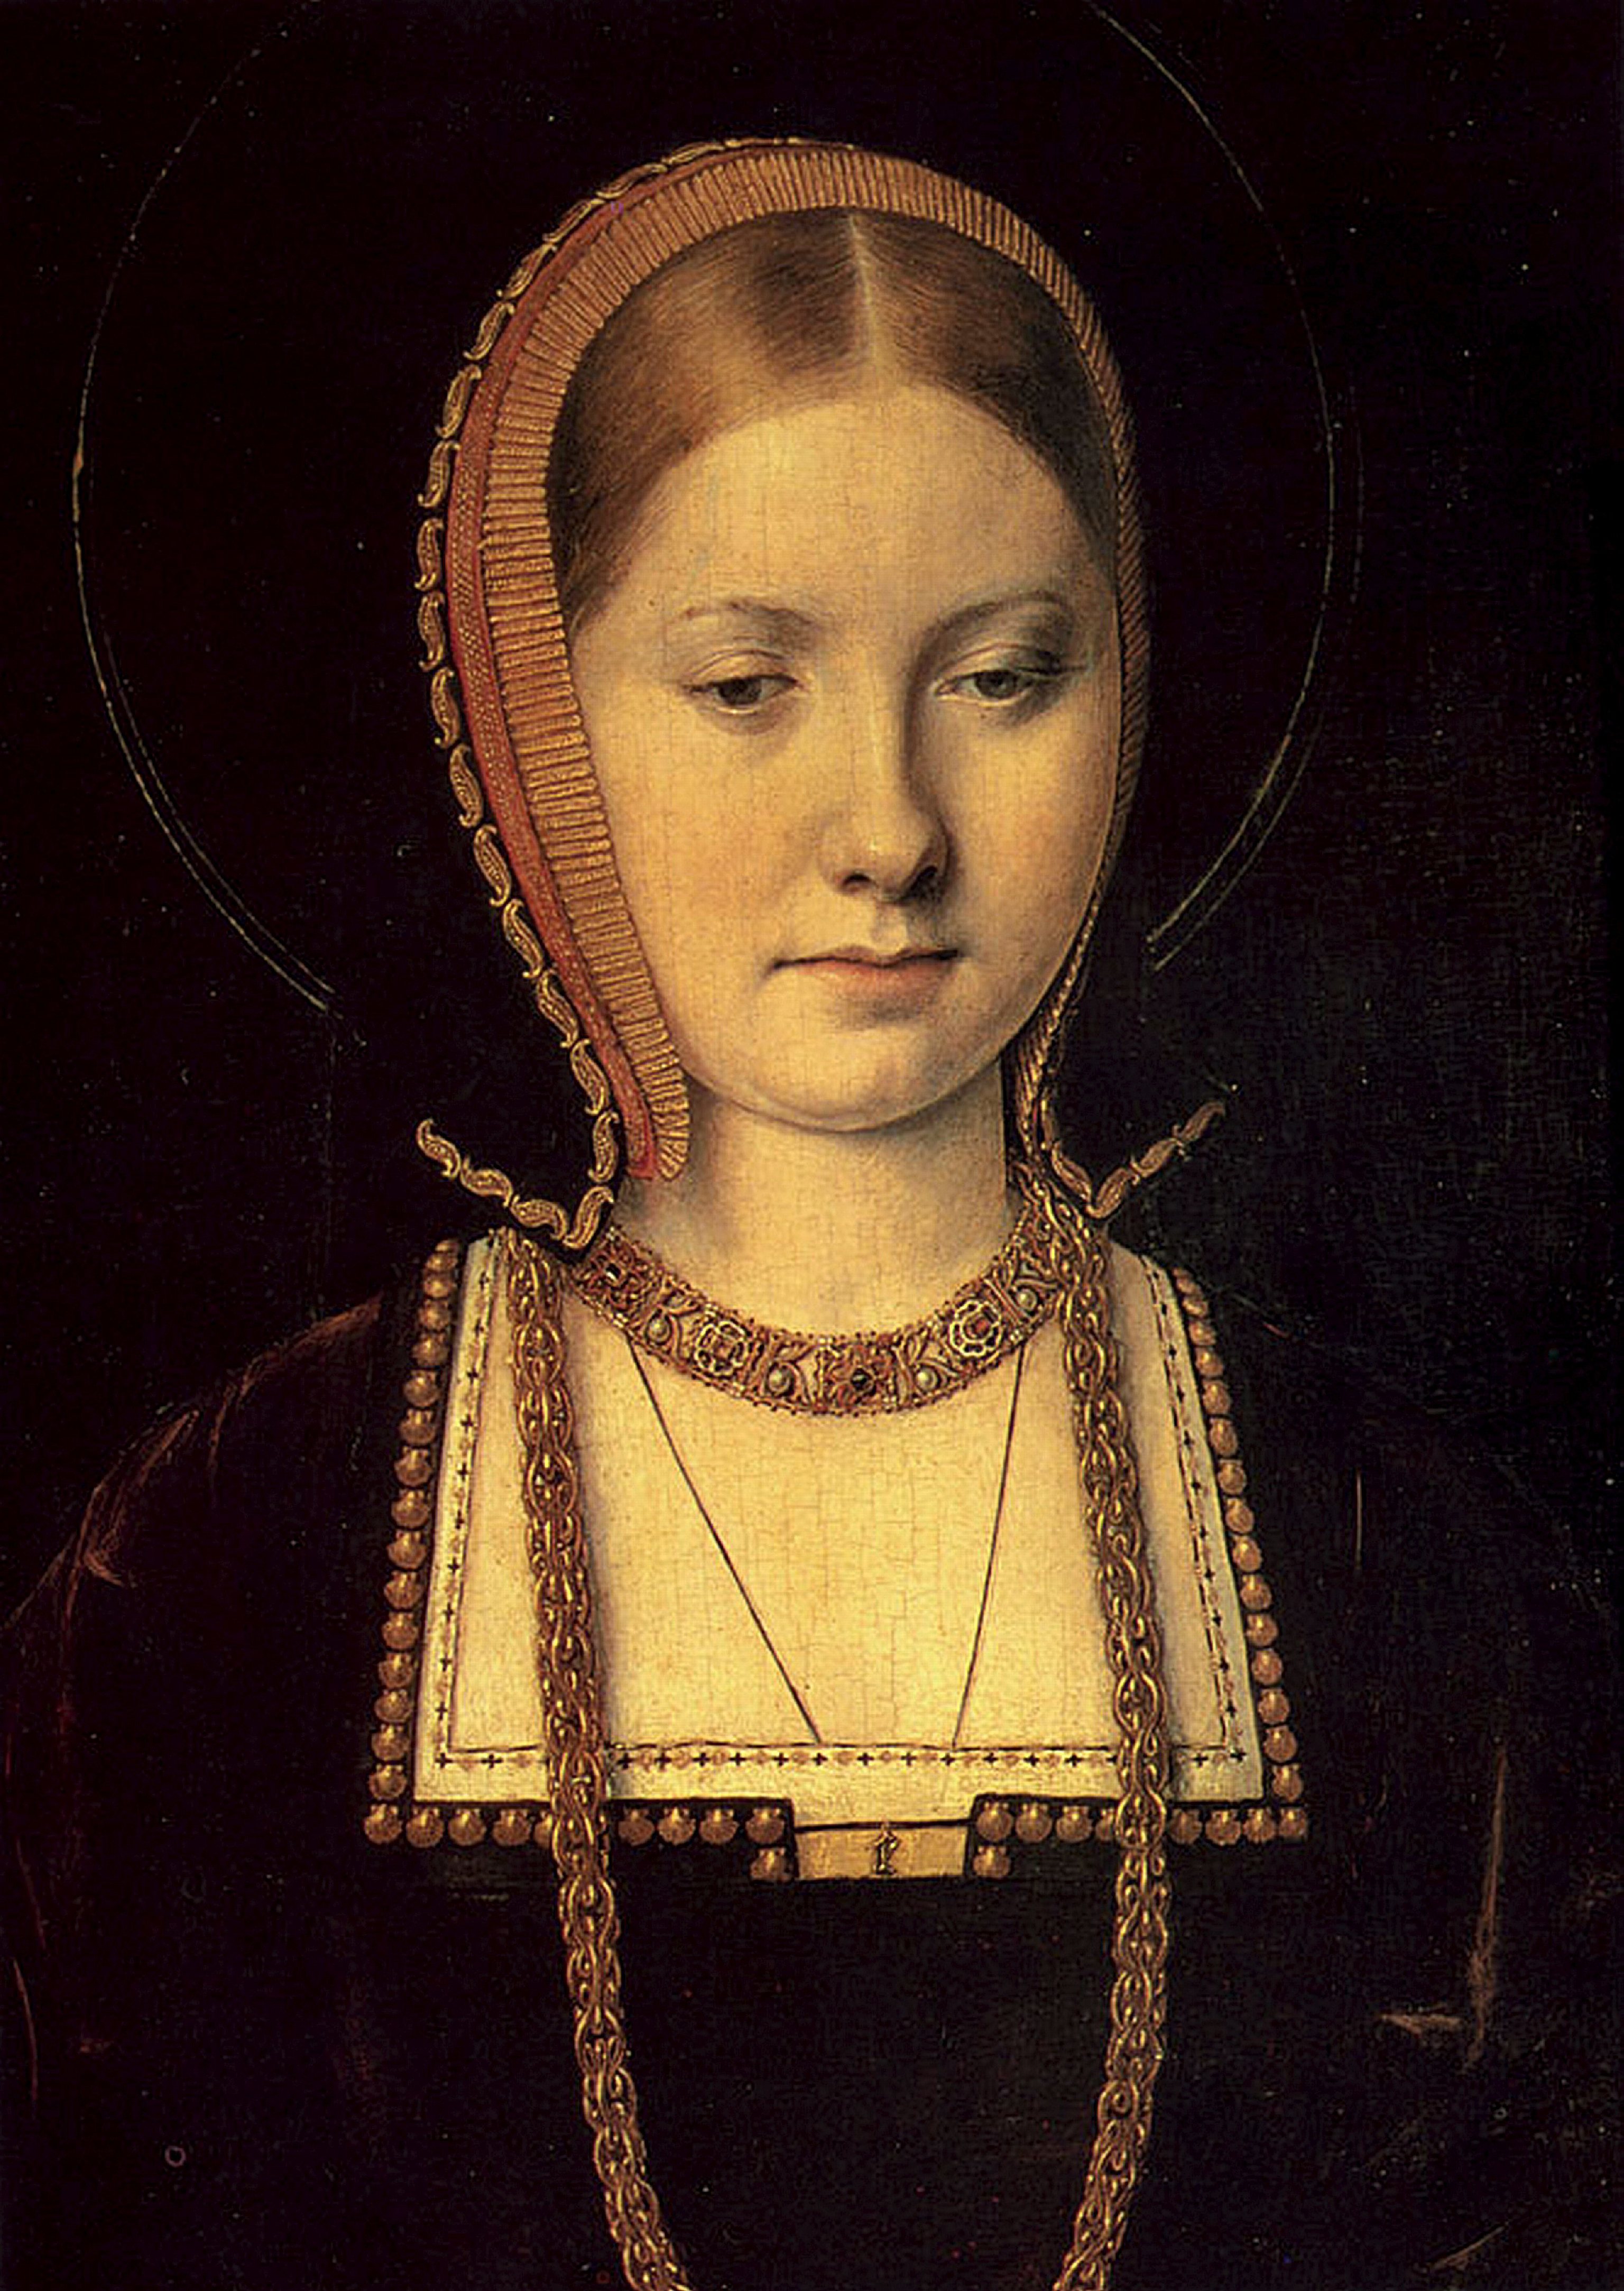 Retrato de Catalina de Aragn, fechado en 1502.